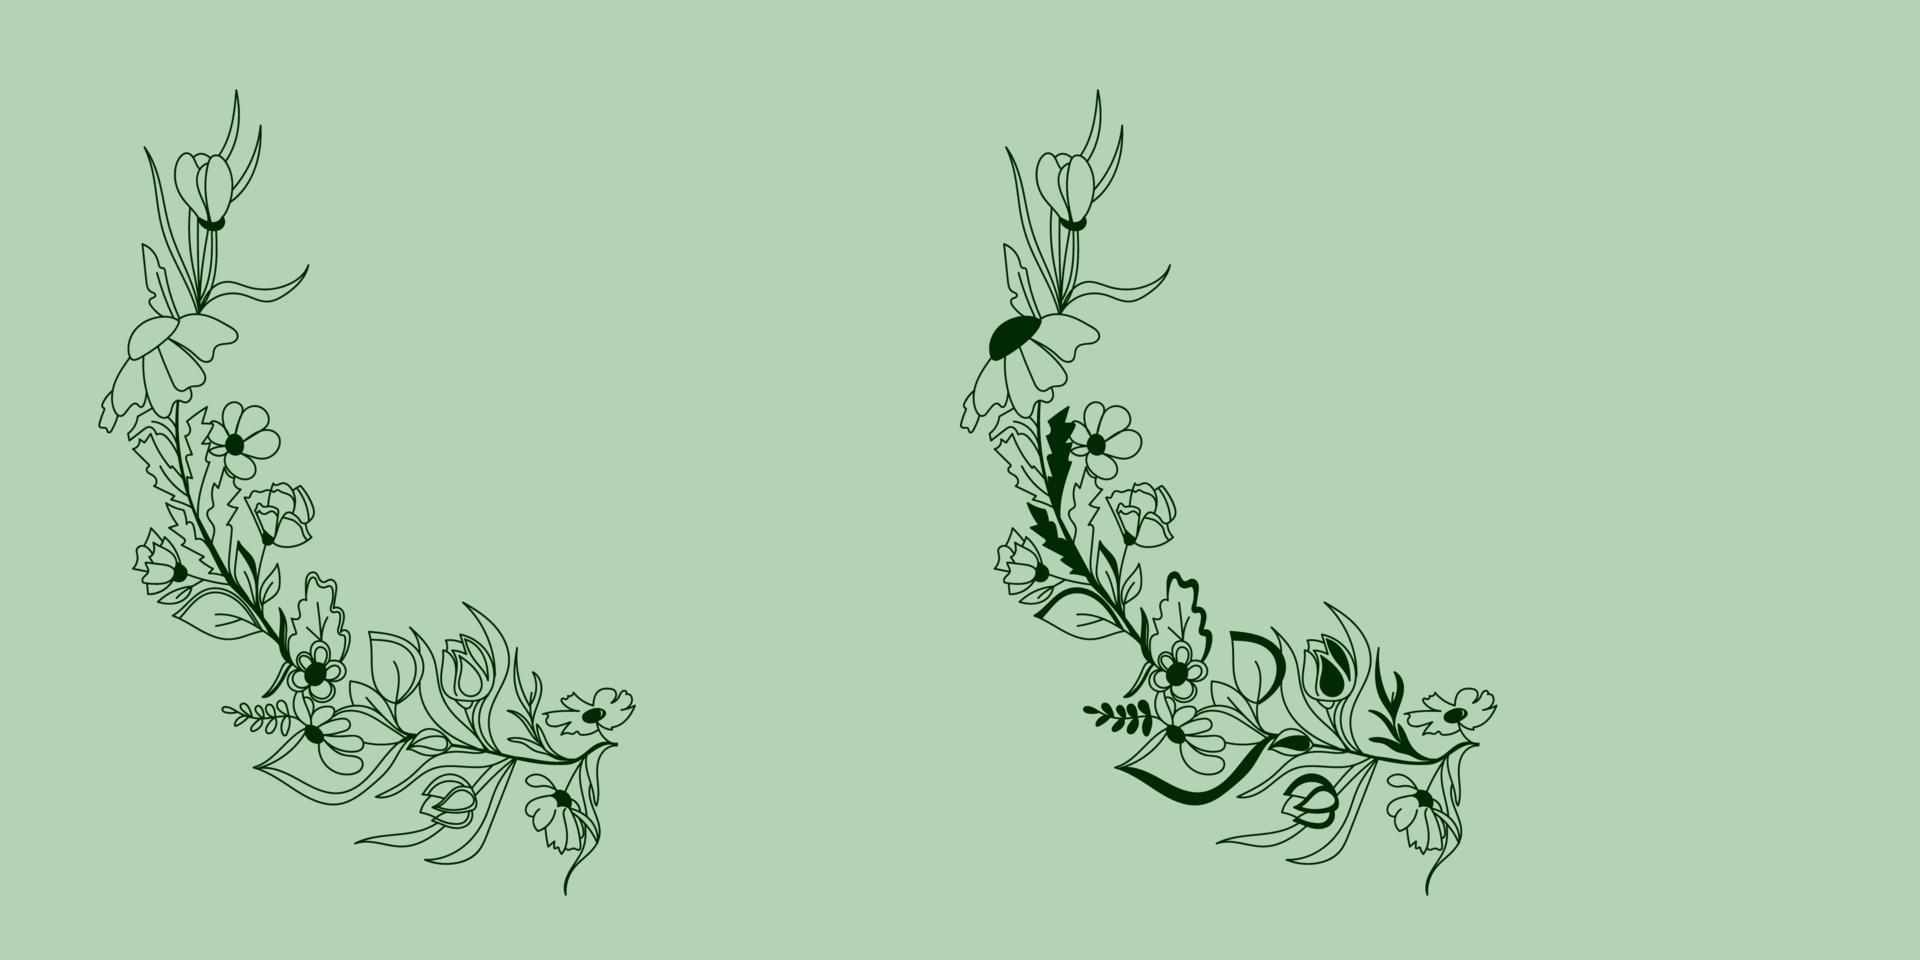 guirlande de fleurs dessinées à la main, branche, brindille, feuilles. élément naturel botanique à base de plantes dans une couronne de style doodle, chapelet, cercle de fleurs vecteur